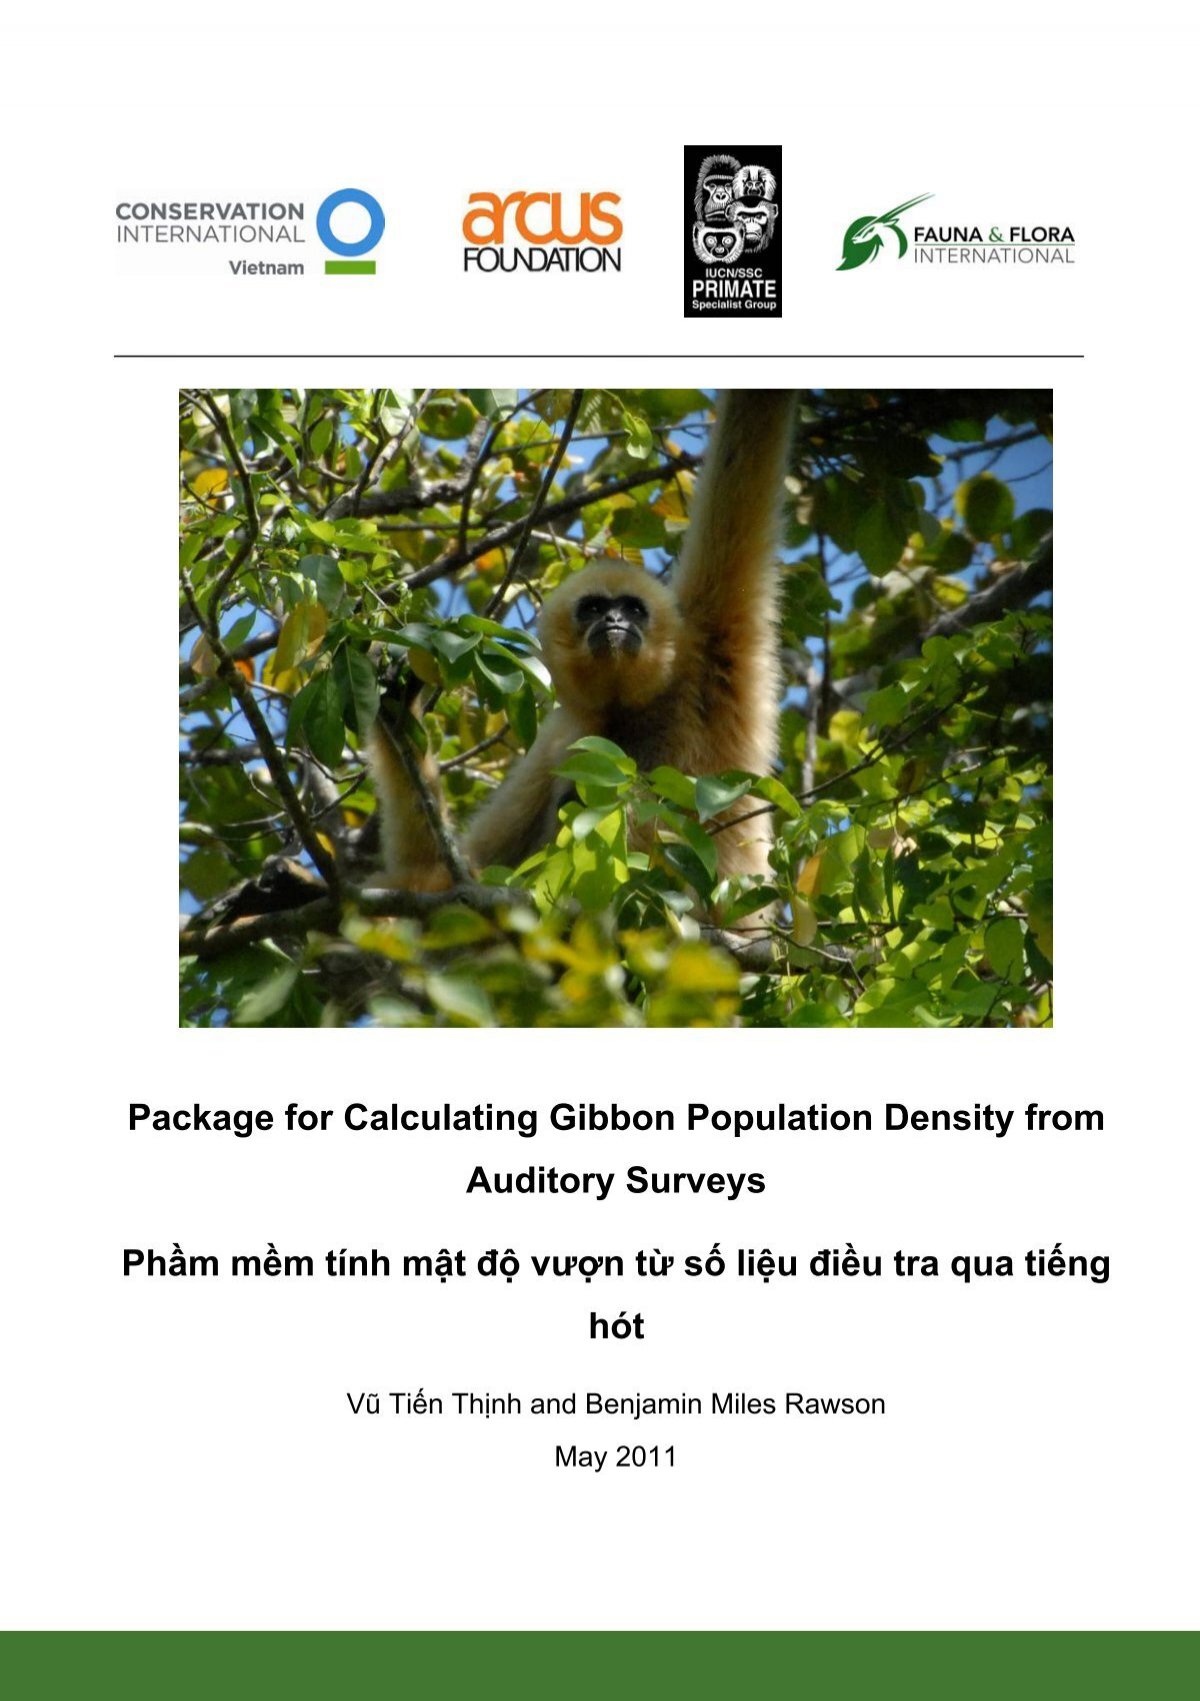 Tính mật độ dân số Gibbon: Nếu bạn đang quan tâm đến vấn đề bảo tồn động vật hoang dã và muốn tìm hiểu về mật độ dân số của loài động vật Gibbon, thì hãy xem hình ảnh liên quan đến từ khóa này. Bạn sẽ được cung cấp những thông tin hữu ích và mới nhất về loài động vật này từ các chuyên gia hàng đầu trong lĩnh vực.